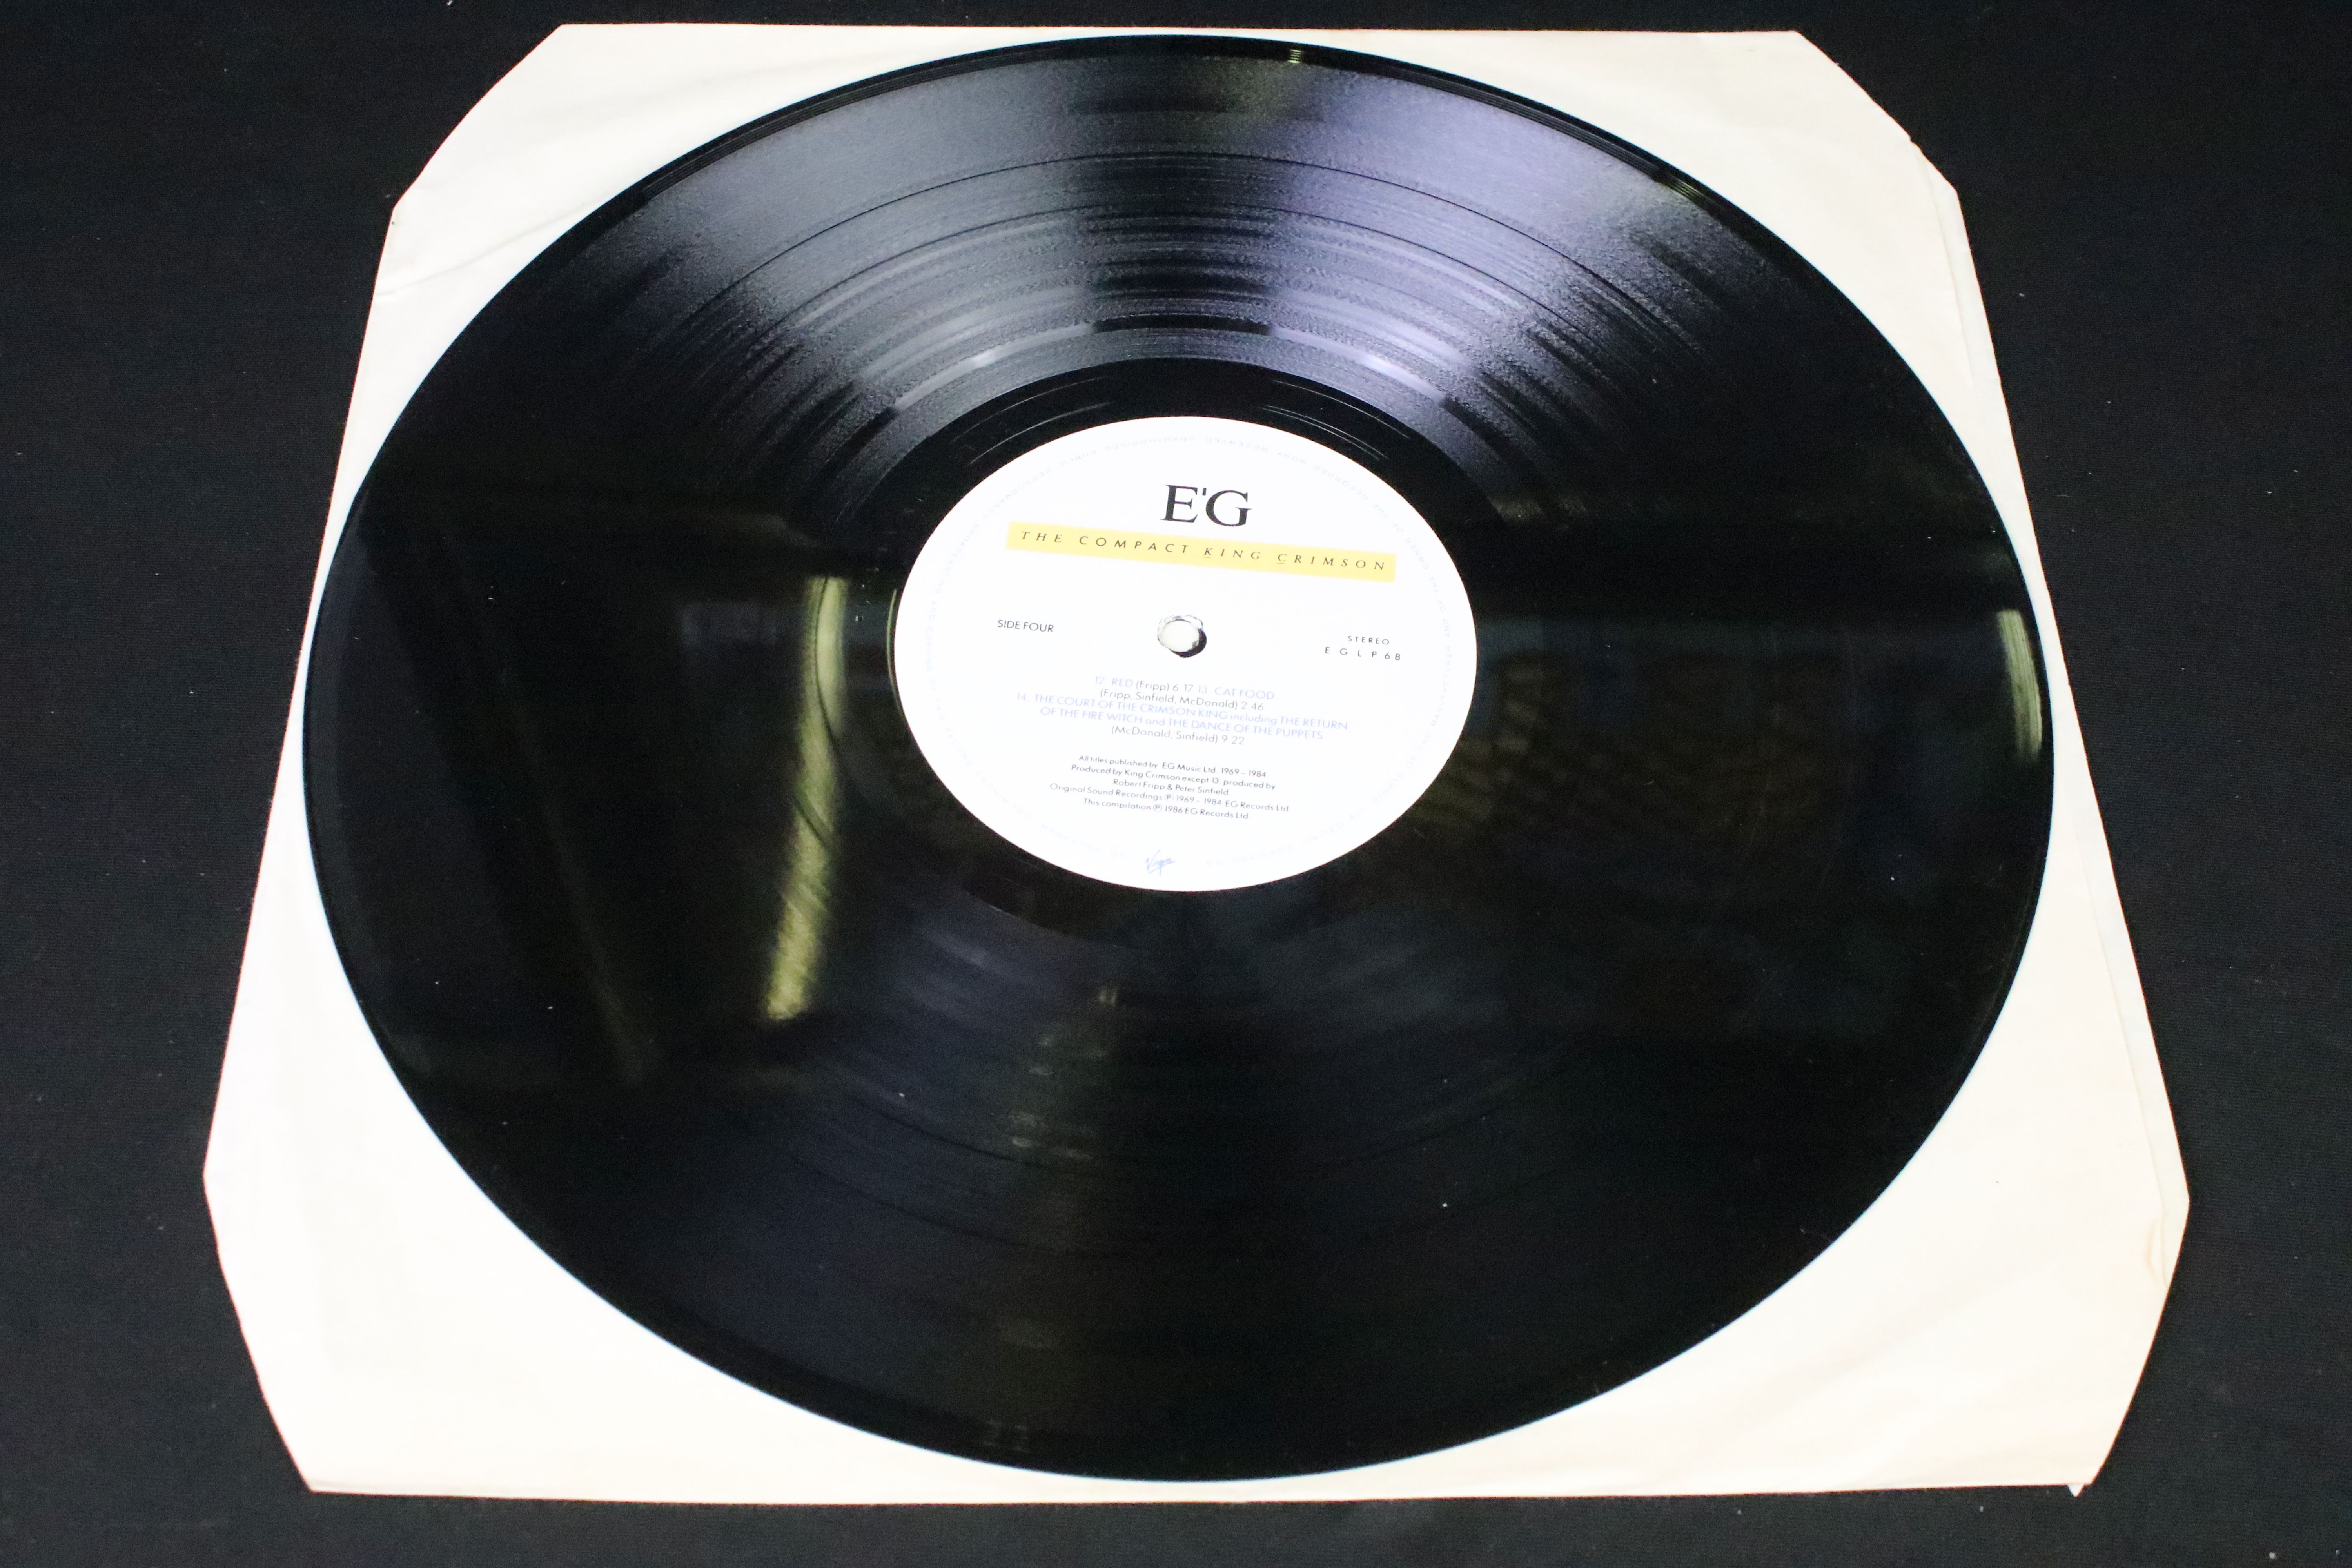 Vinyl / Autographs - King Crimson – The Compact King Crimson, original UK 1986 double album, EG - Image 12 of 14